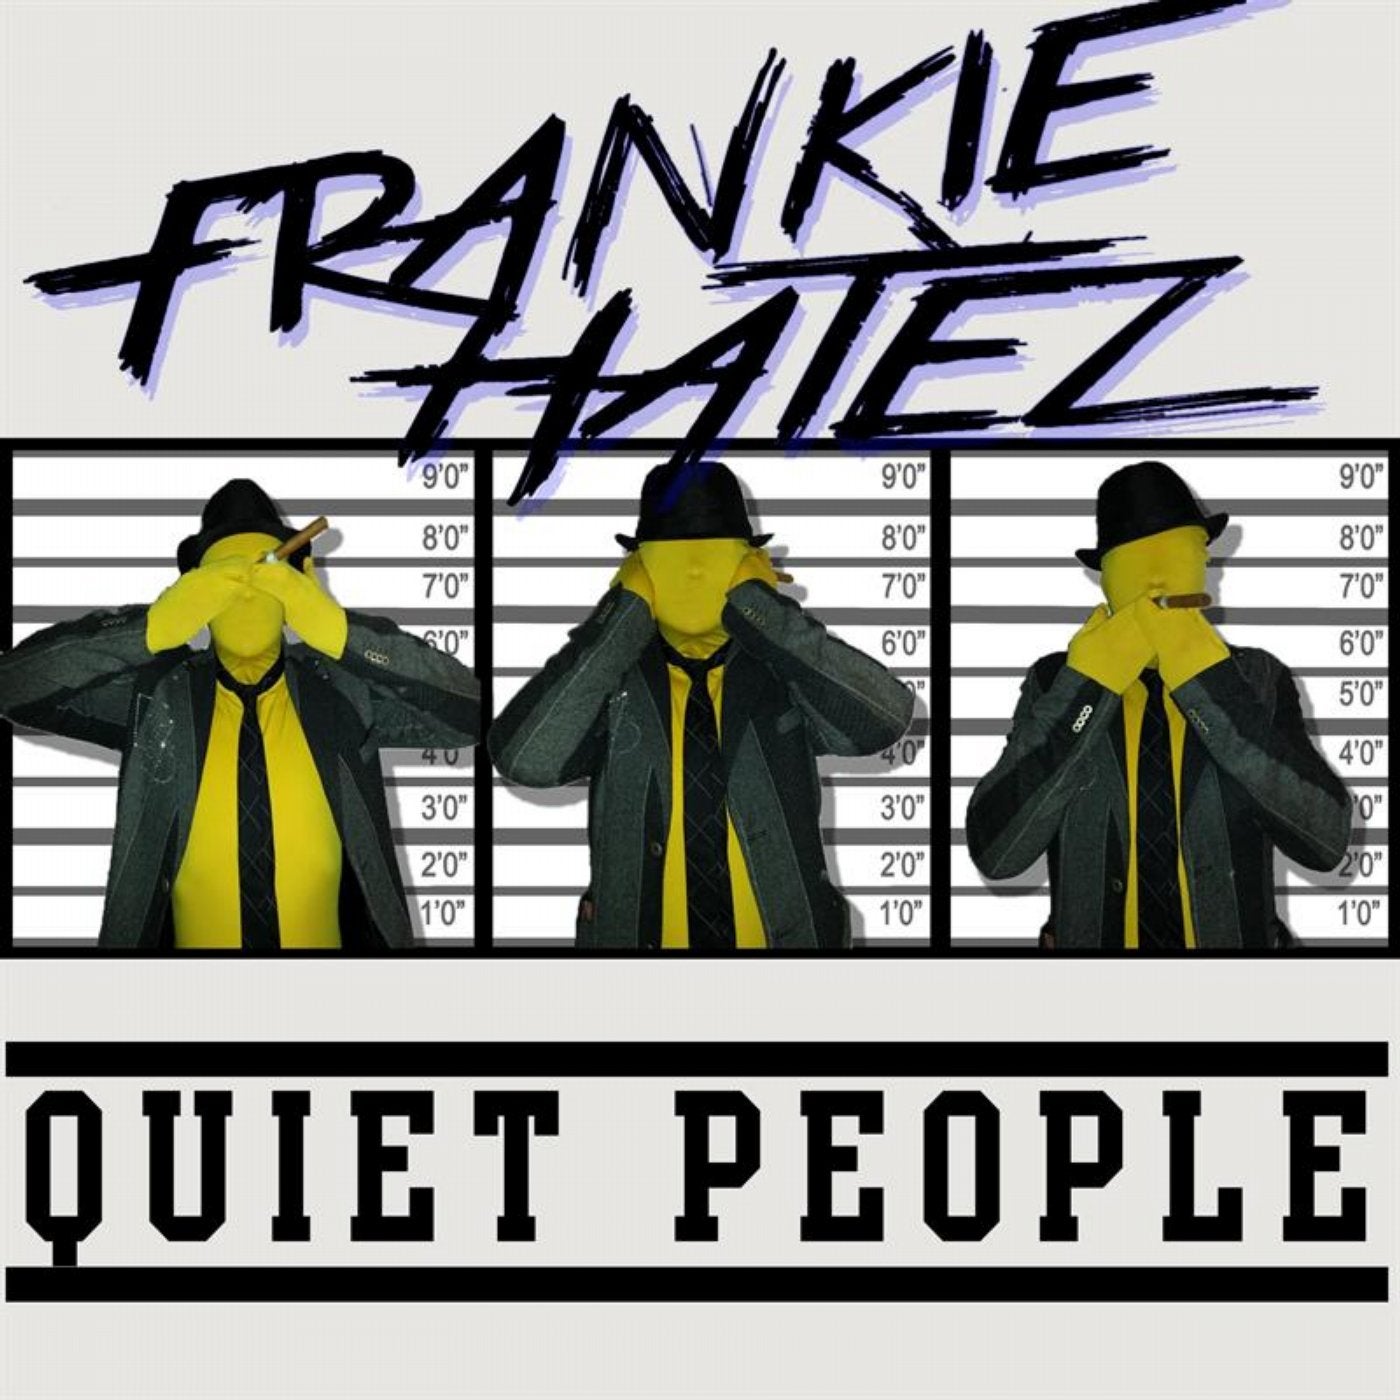 Quiet People